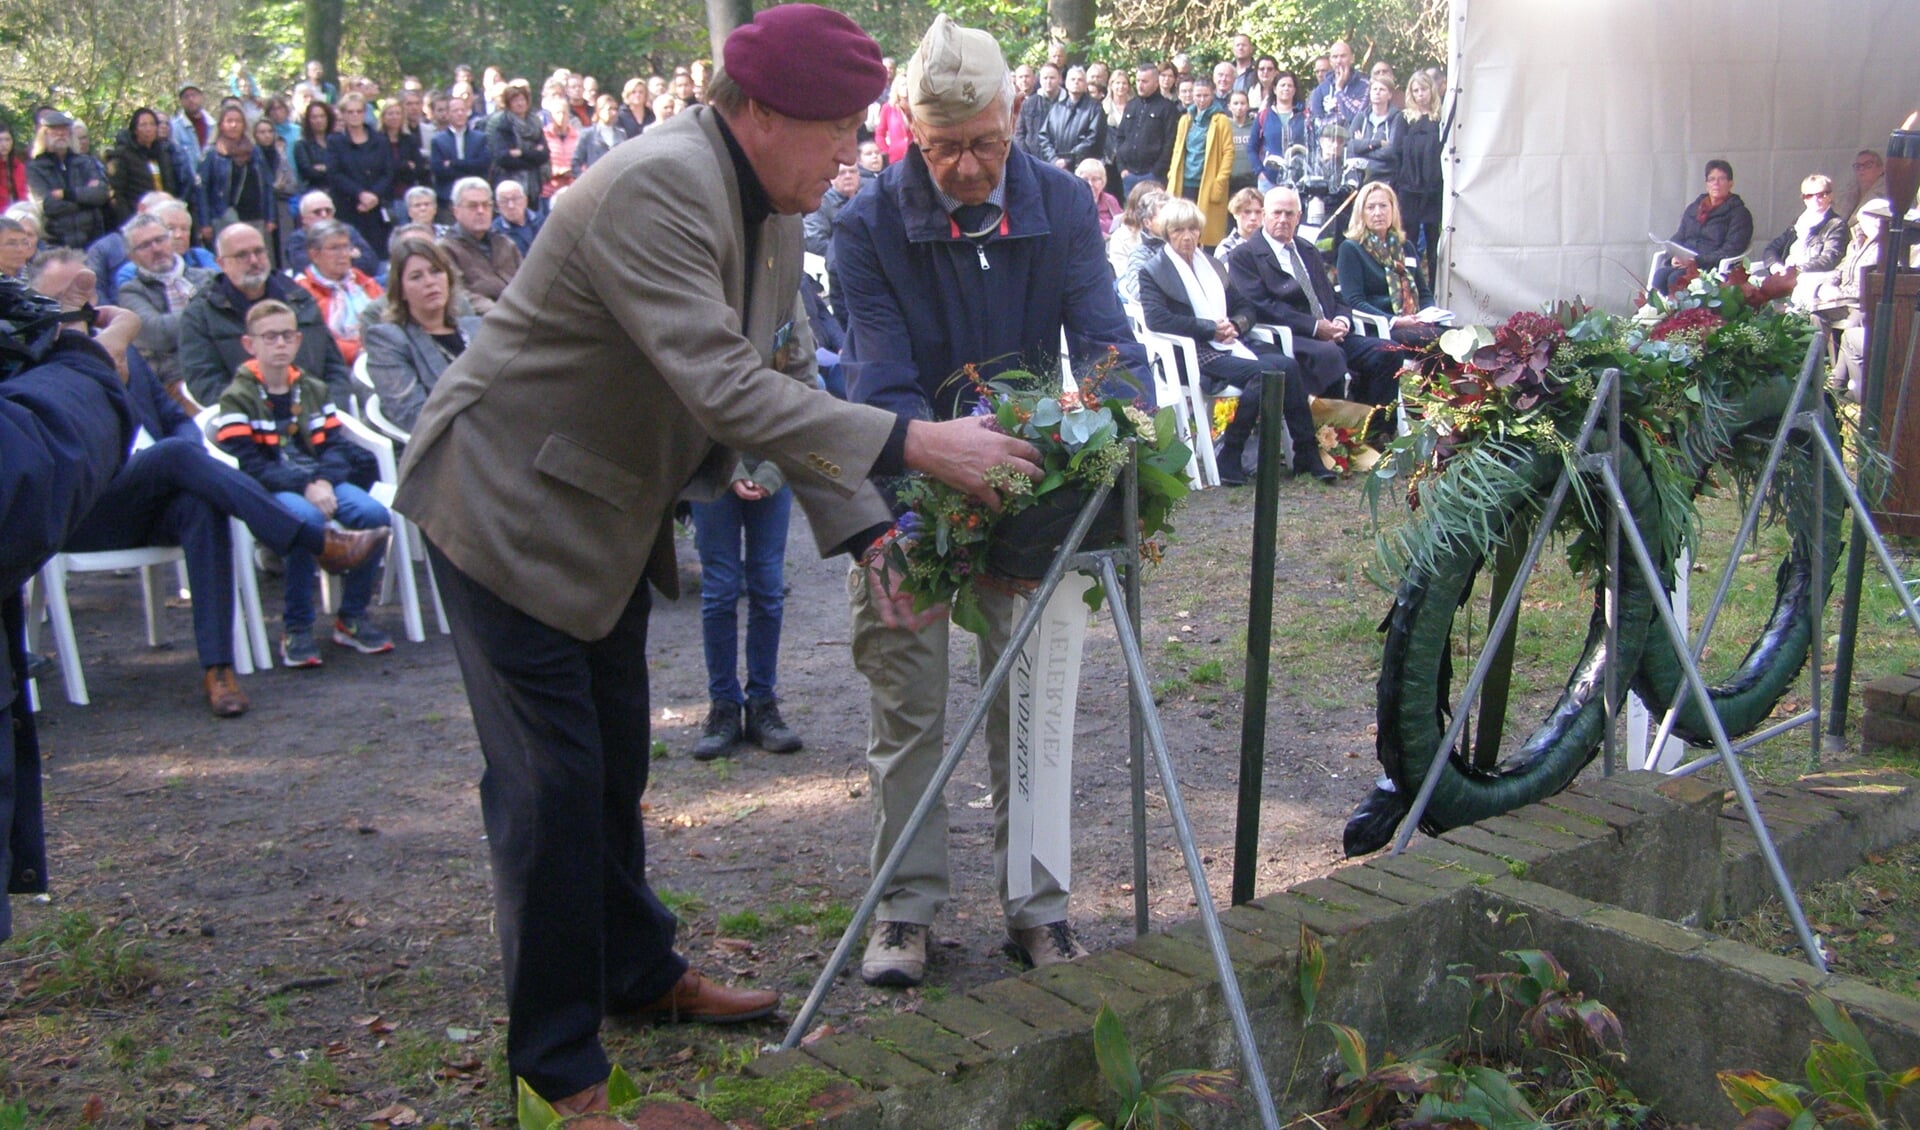 Veteranen uit de gemeente Zundert leggen voor de eerste keer een krans tijdens de herdenking.